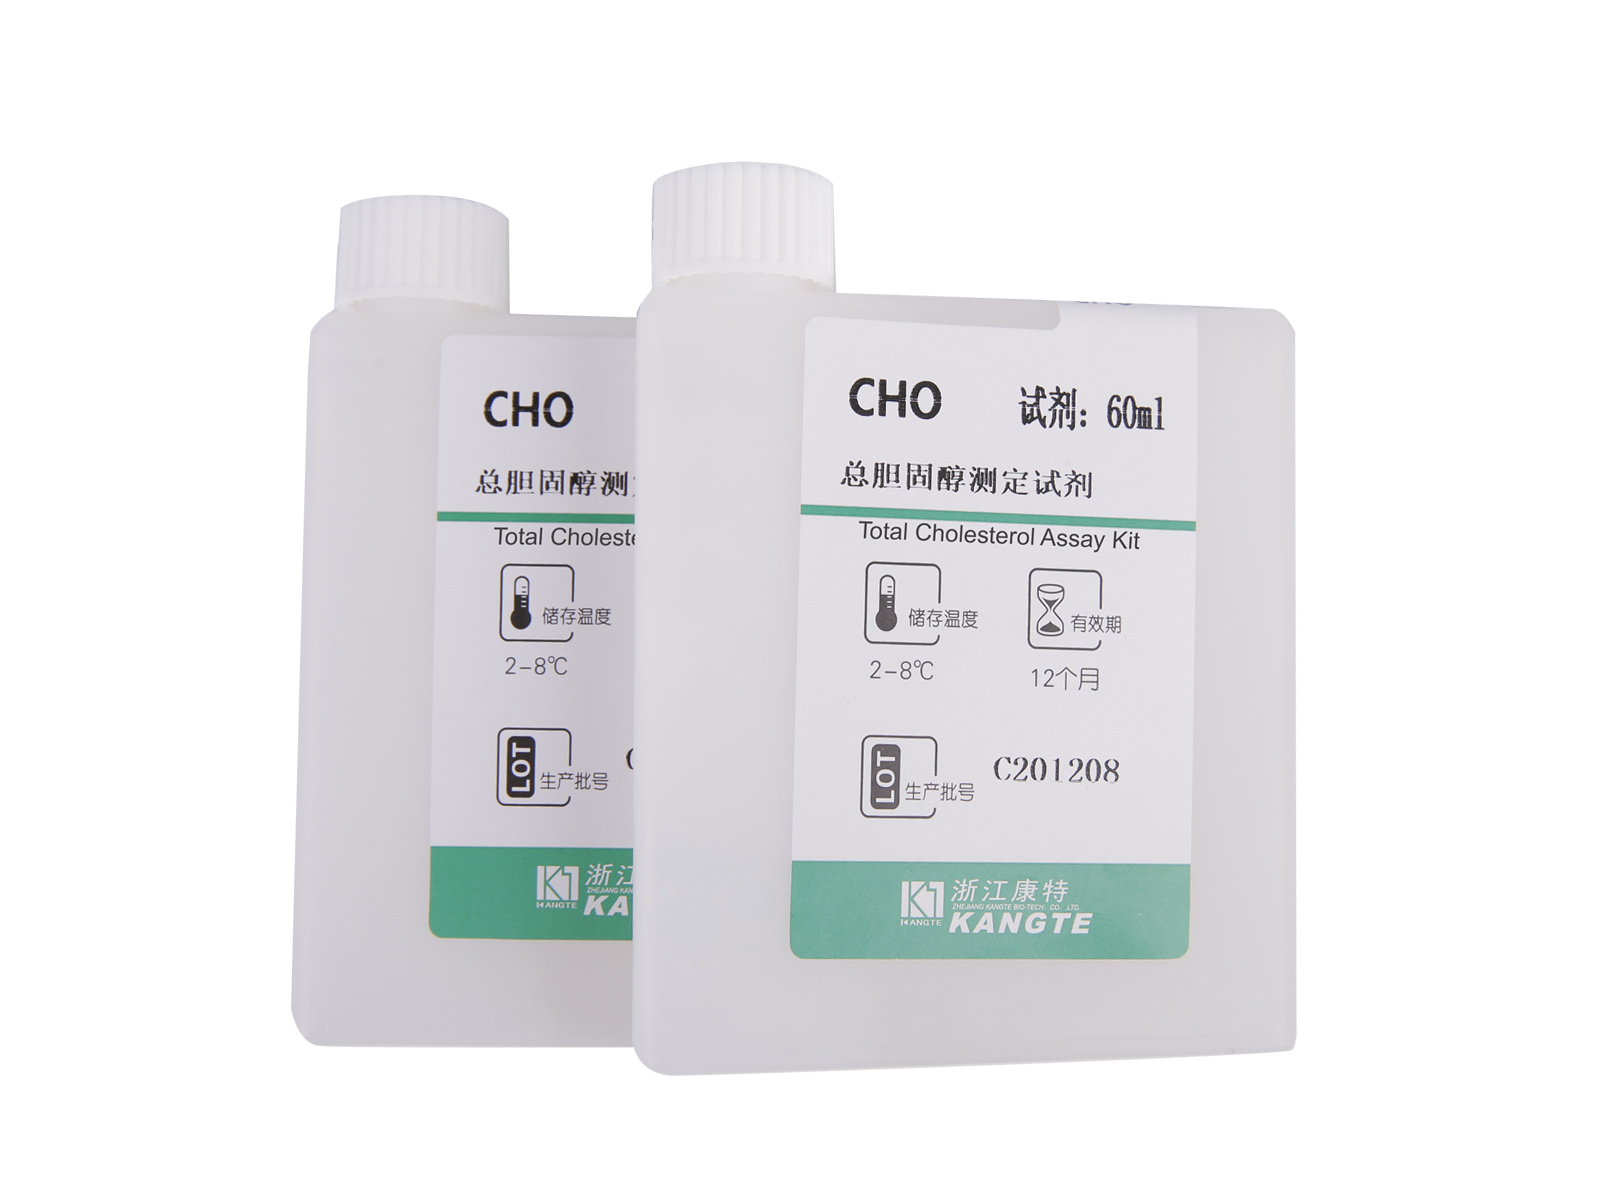 【CHO】Kit de testare a colesterolului total (Metoda CHOD-PAP)